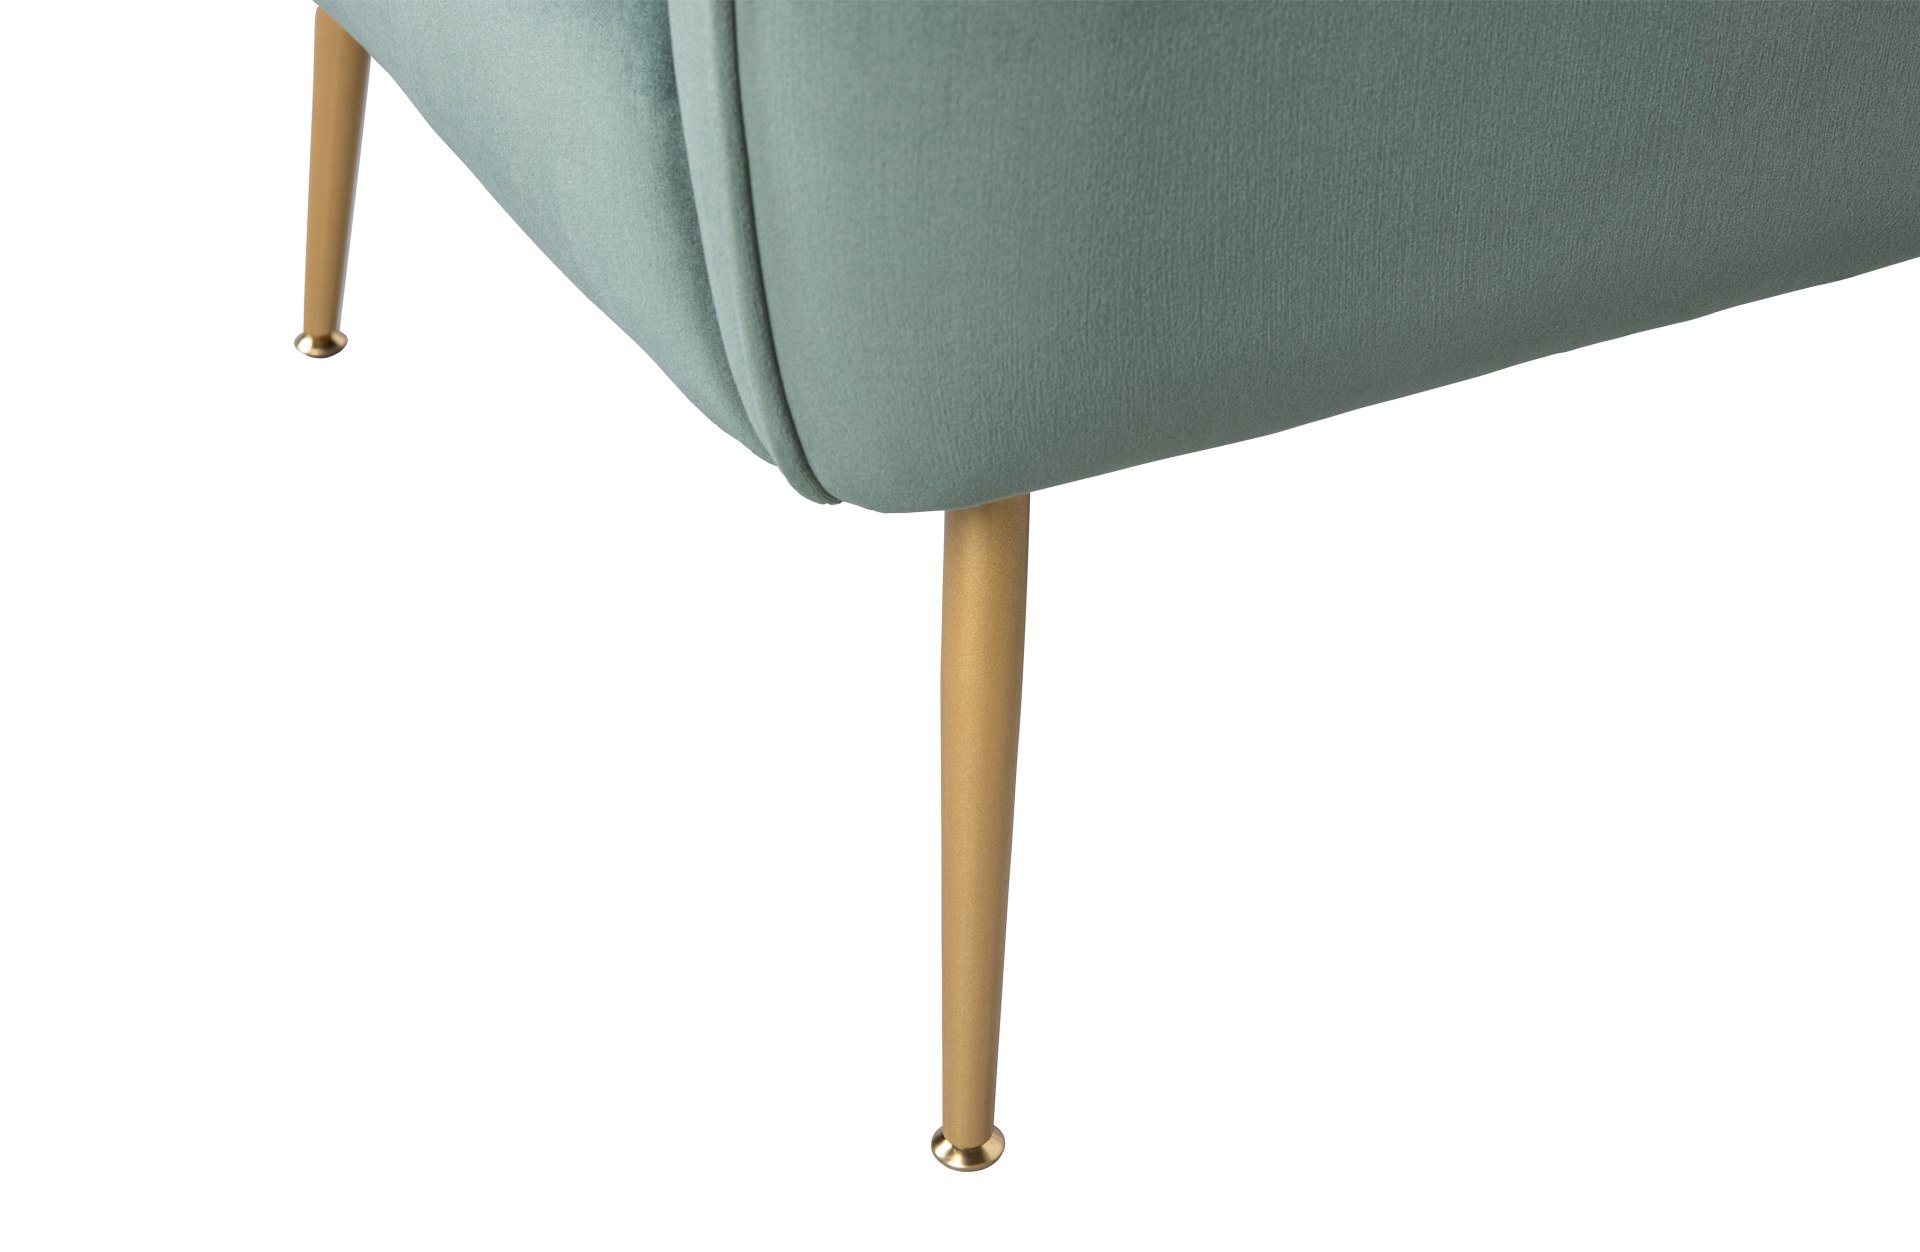 Der Sessel Scout wurde aus einem Samt Bezug gefertigt, Welches einen grünen Farbton besitzt. Das Gestell ist aus Metall und ist in einem goldenem Farbton.